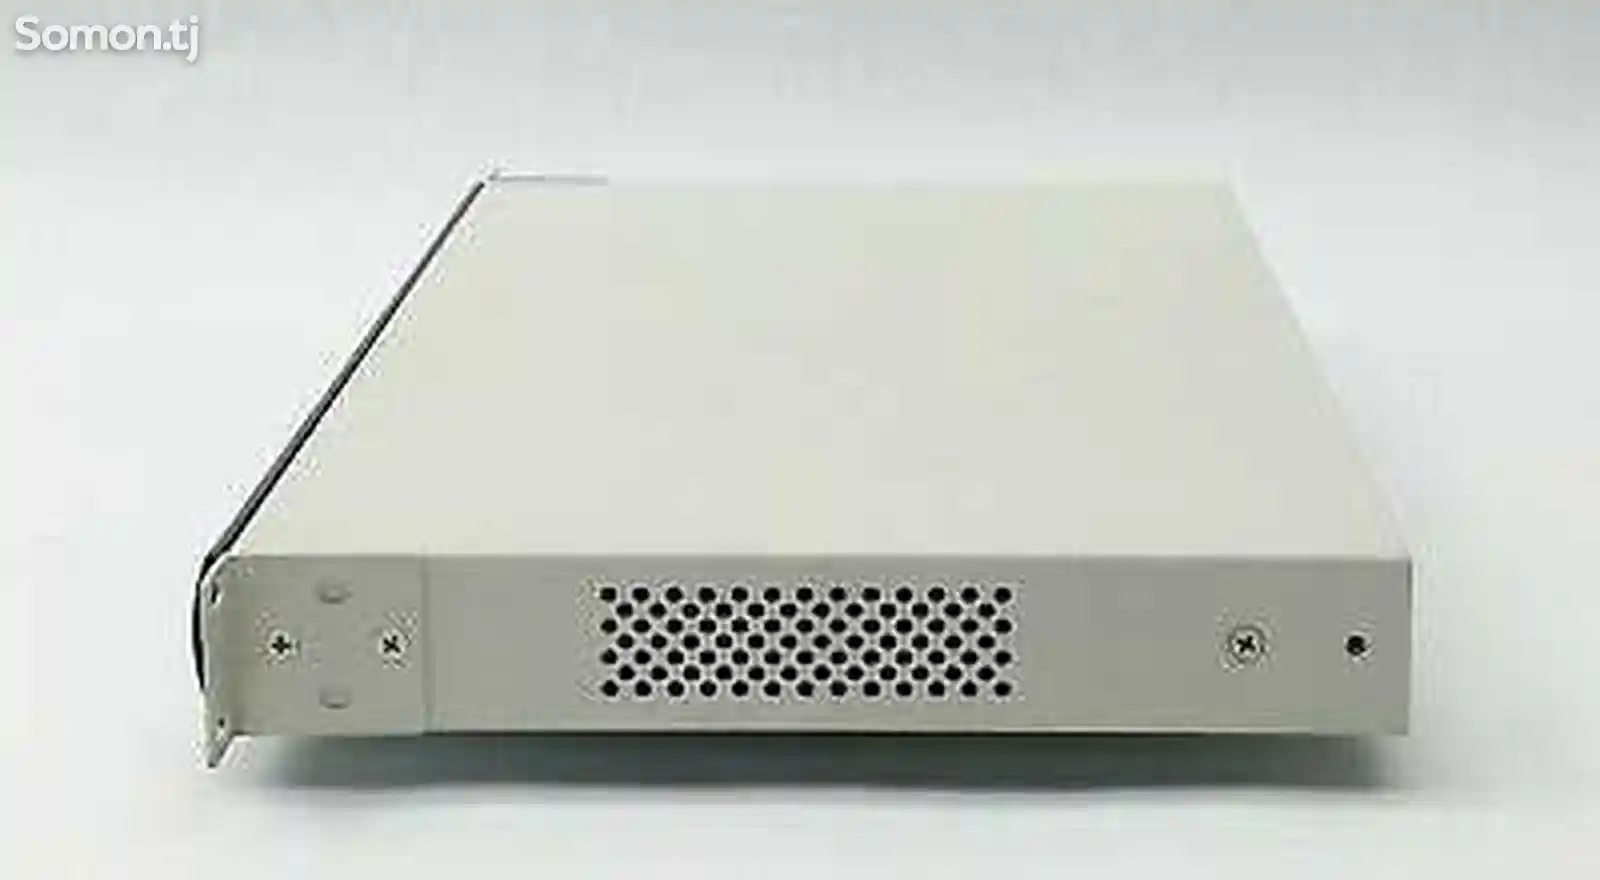 Шлюз Quintum Tenor DX Series DX4120 Gateway. VoIp-2